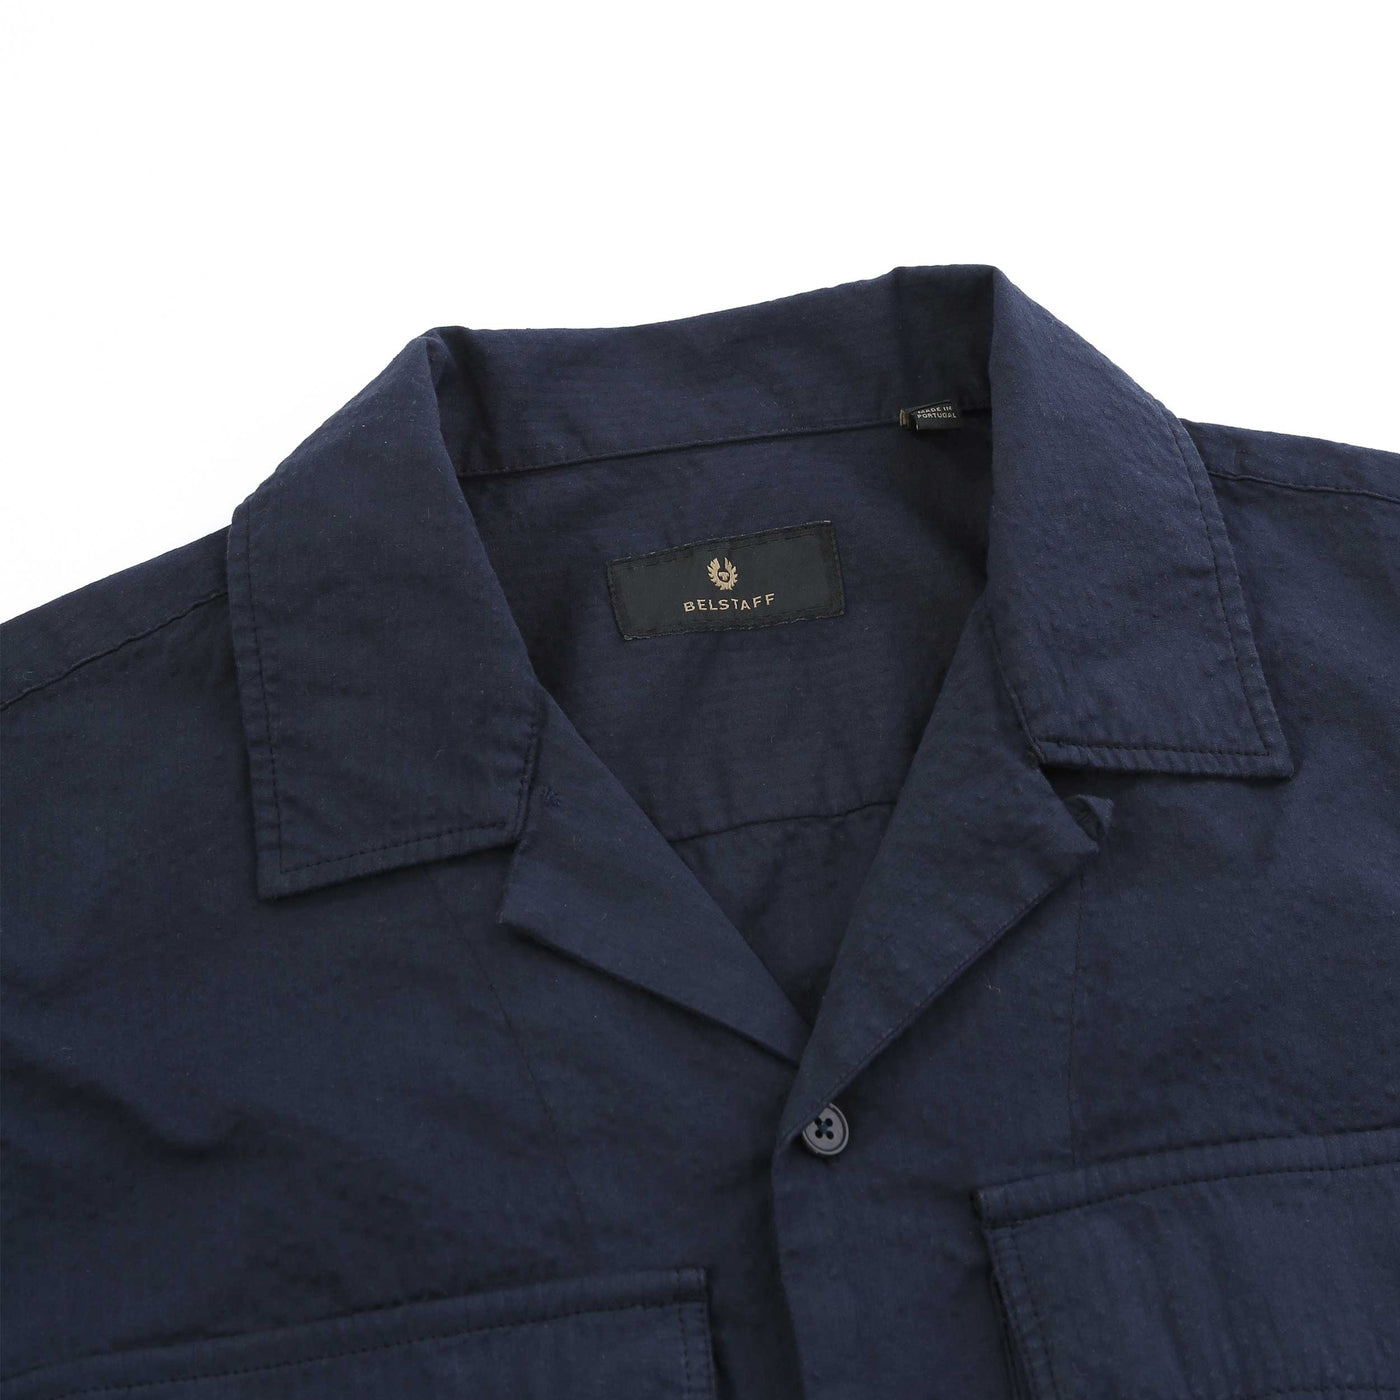  Belstaff Caster SS Shirt in Navy Collar